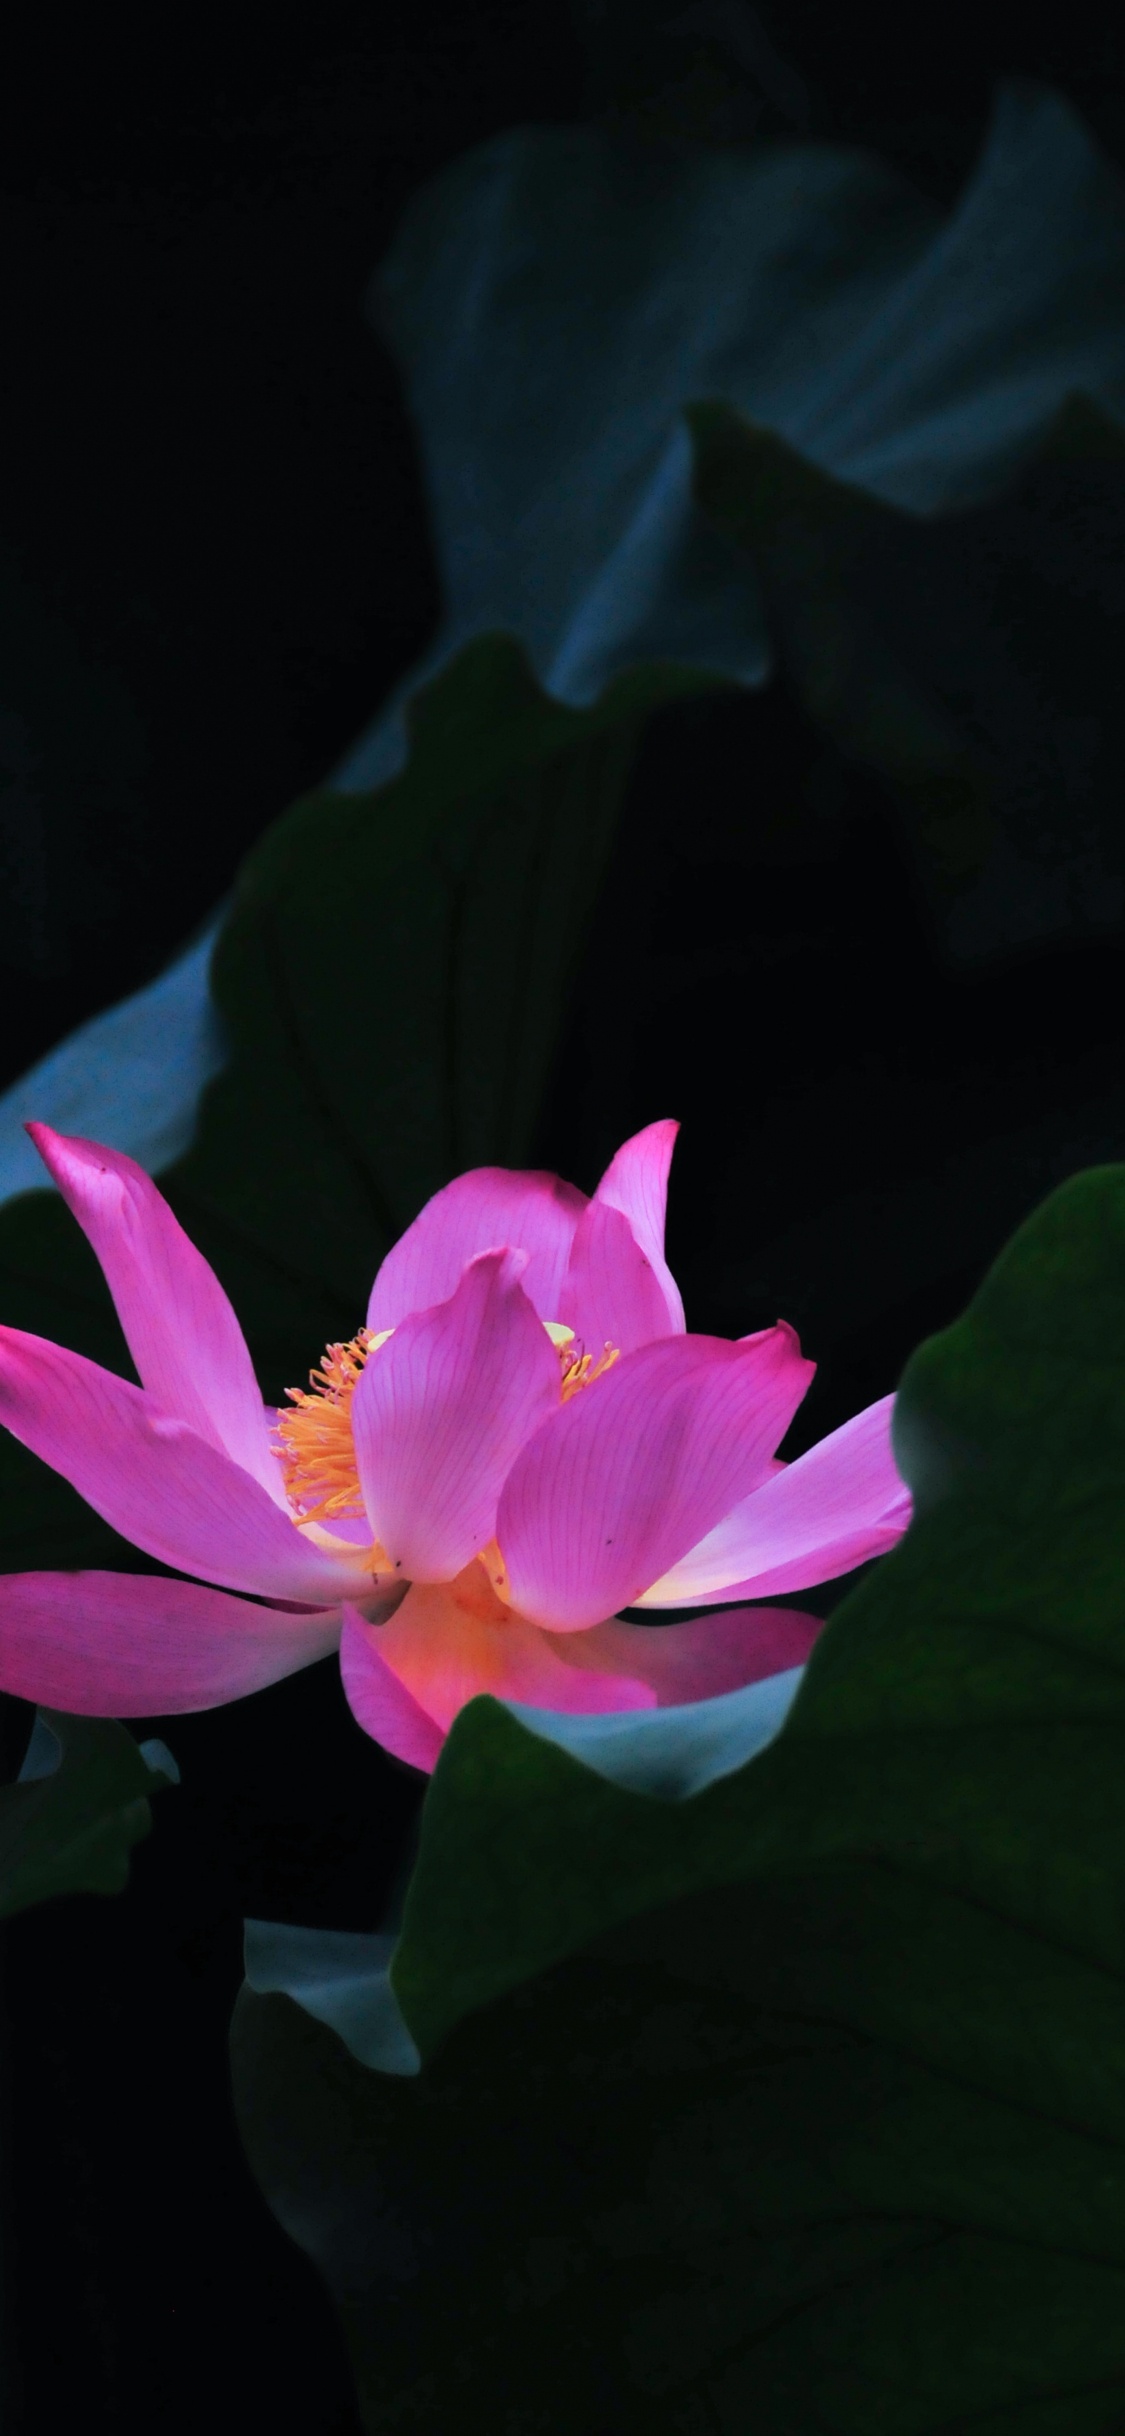 Pink Lotus Flower in Bloom. Wallpaper in 1125x2436 Resolution